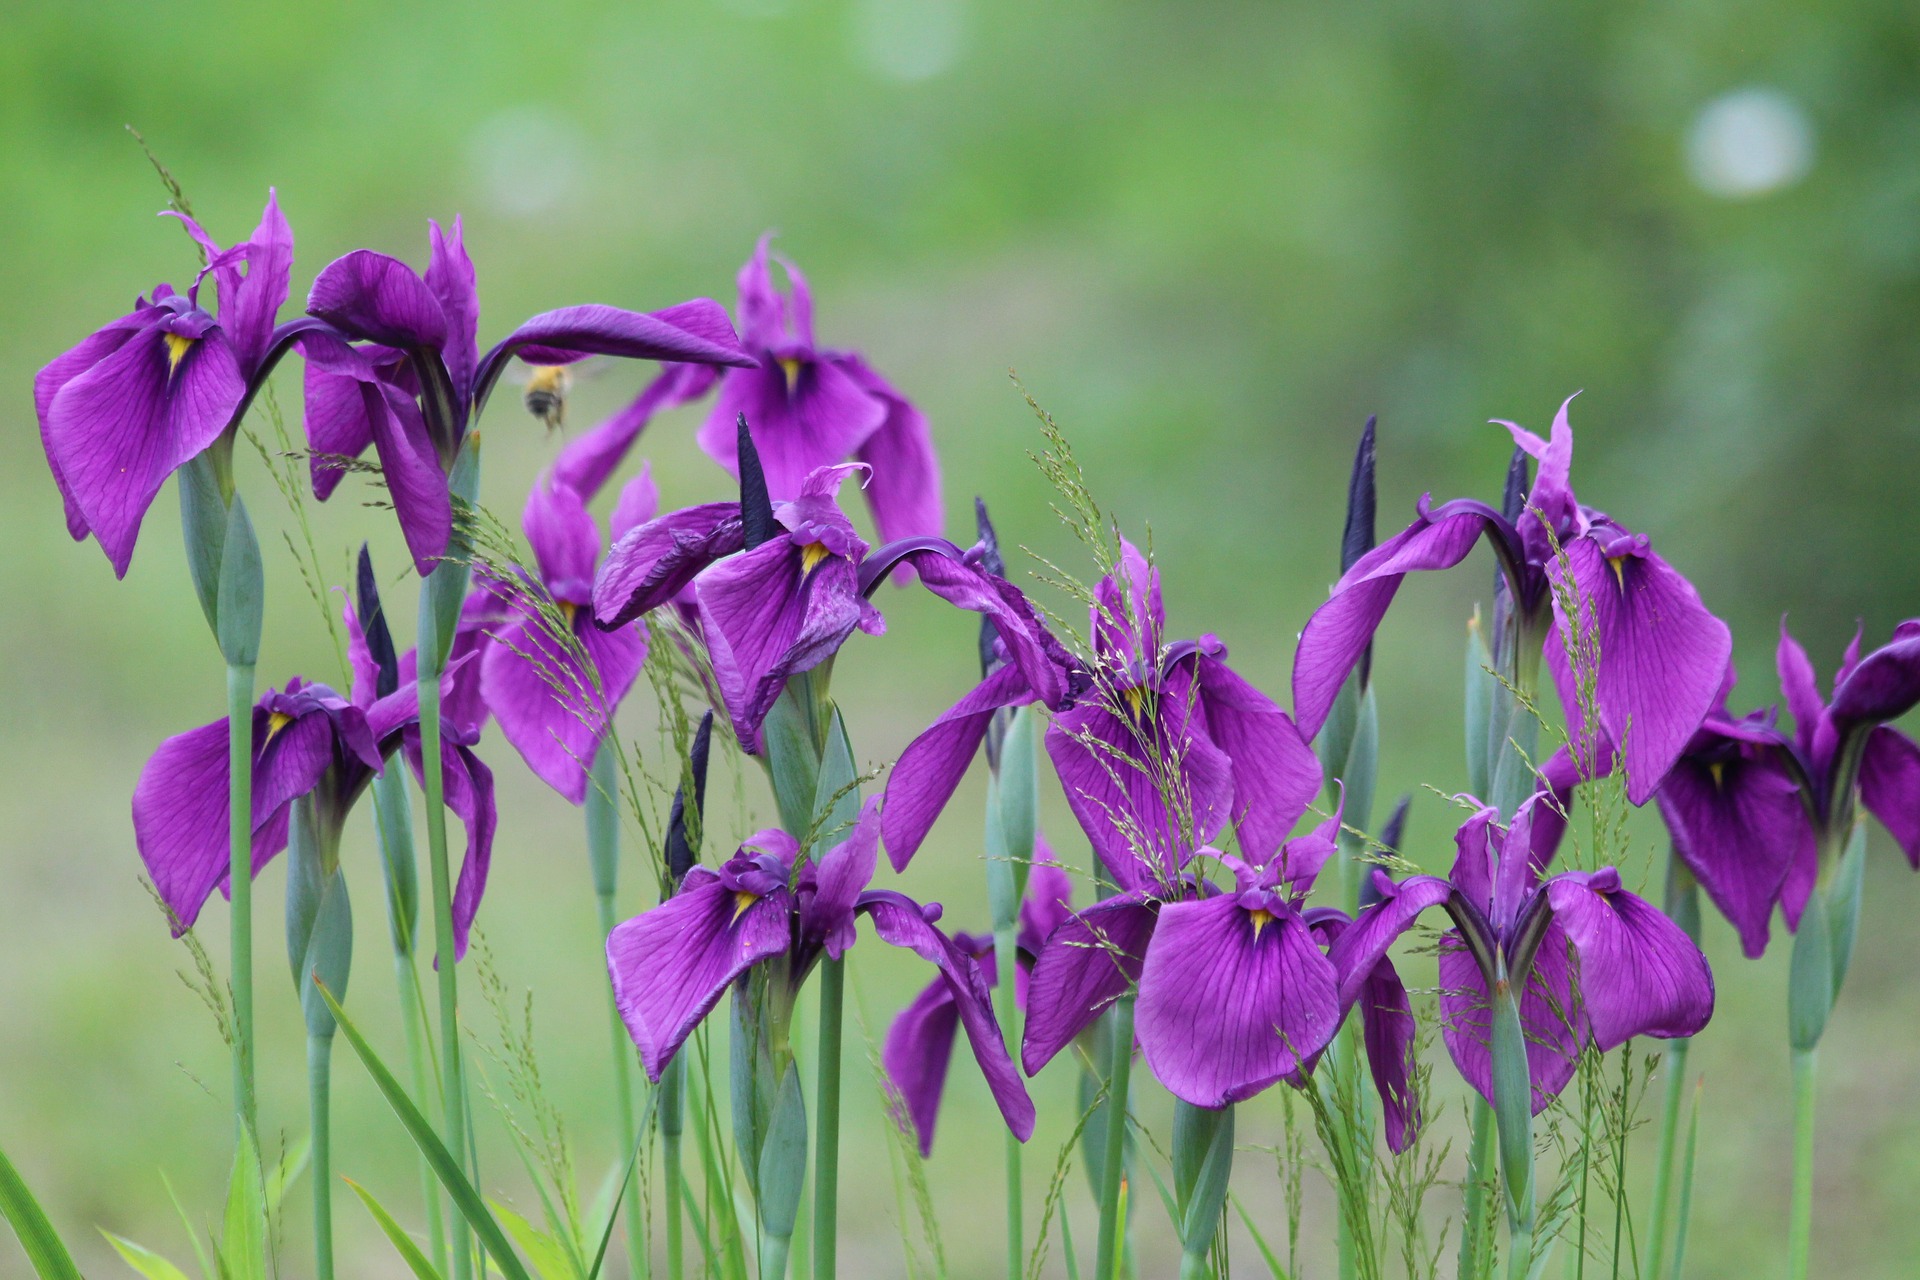 group of iris